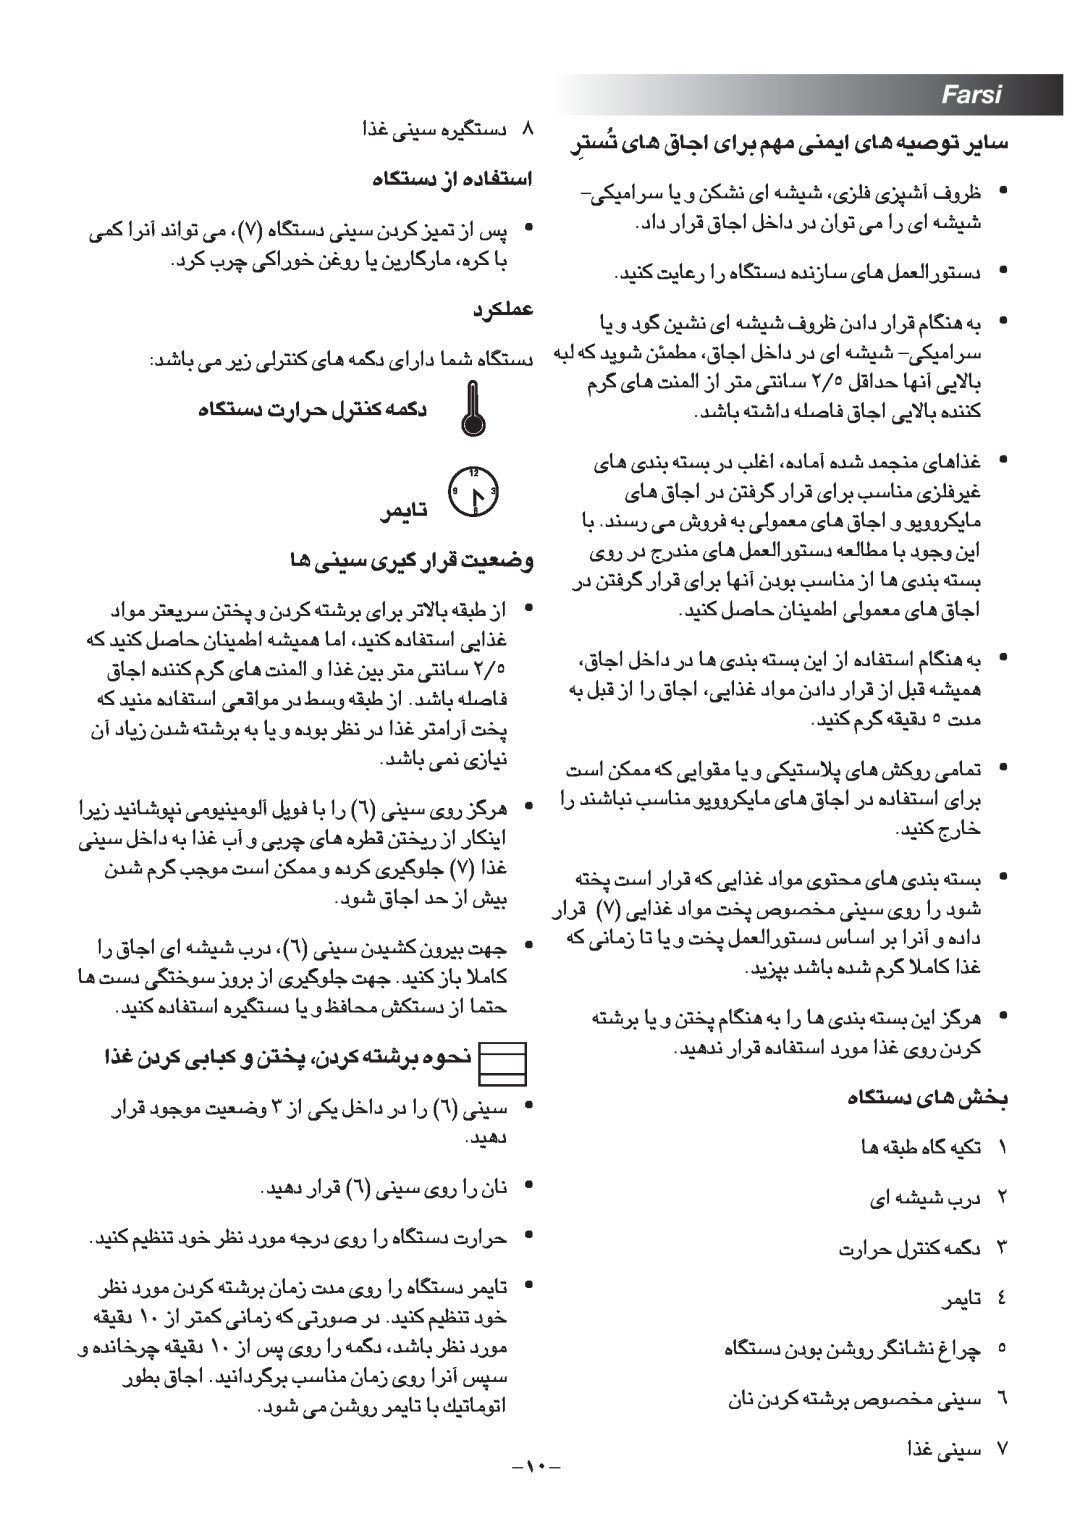 Black & Decker TRO1000 manual Farsi 